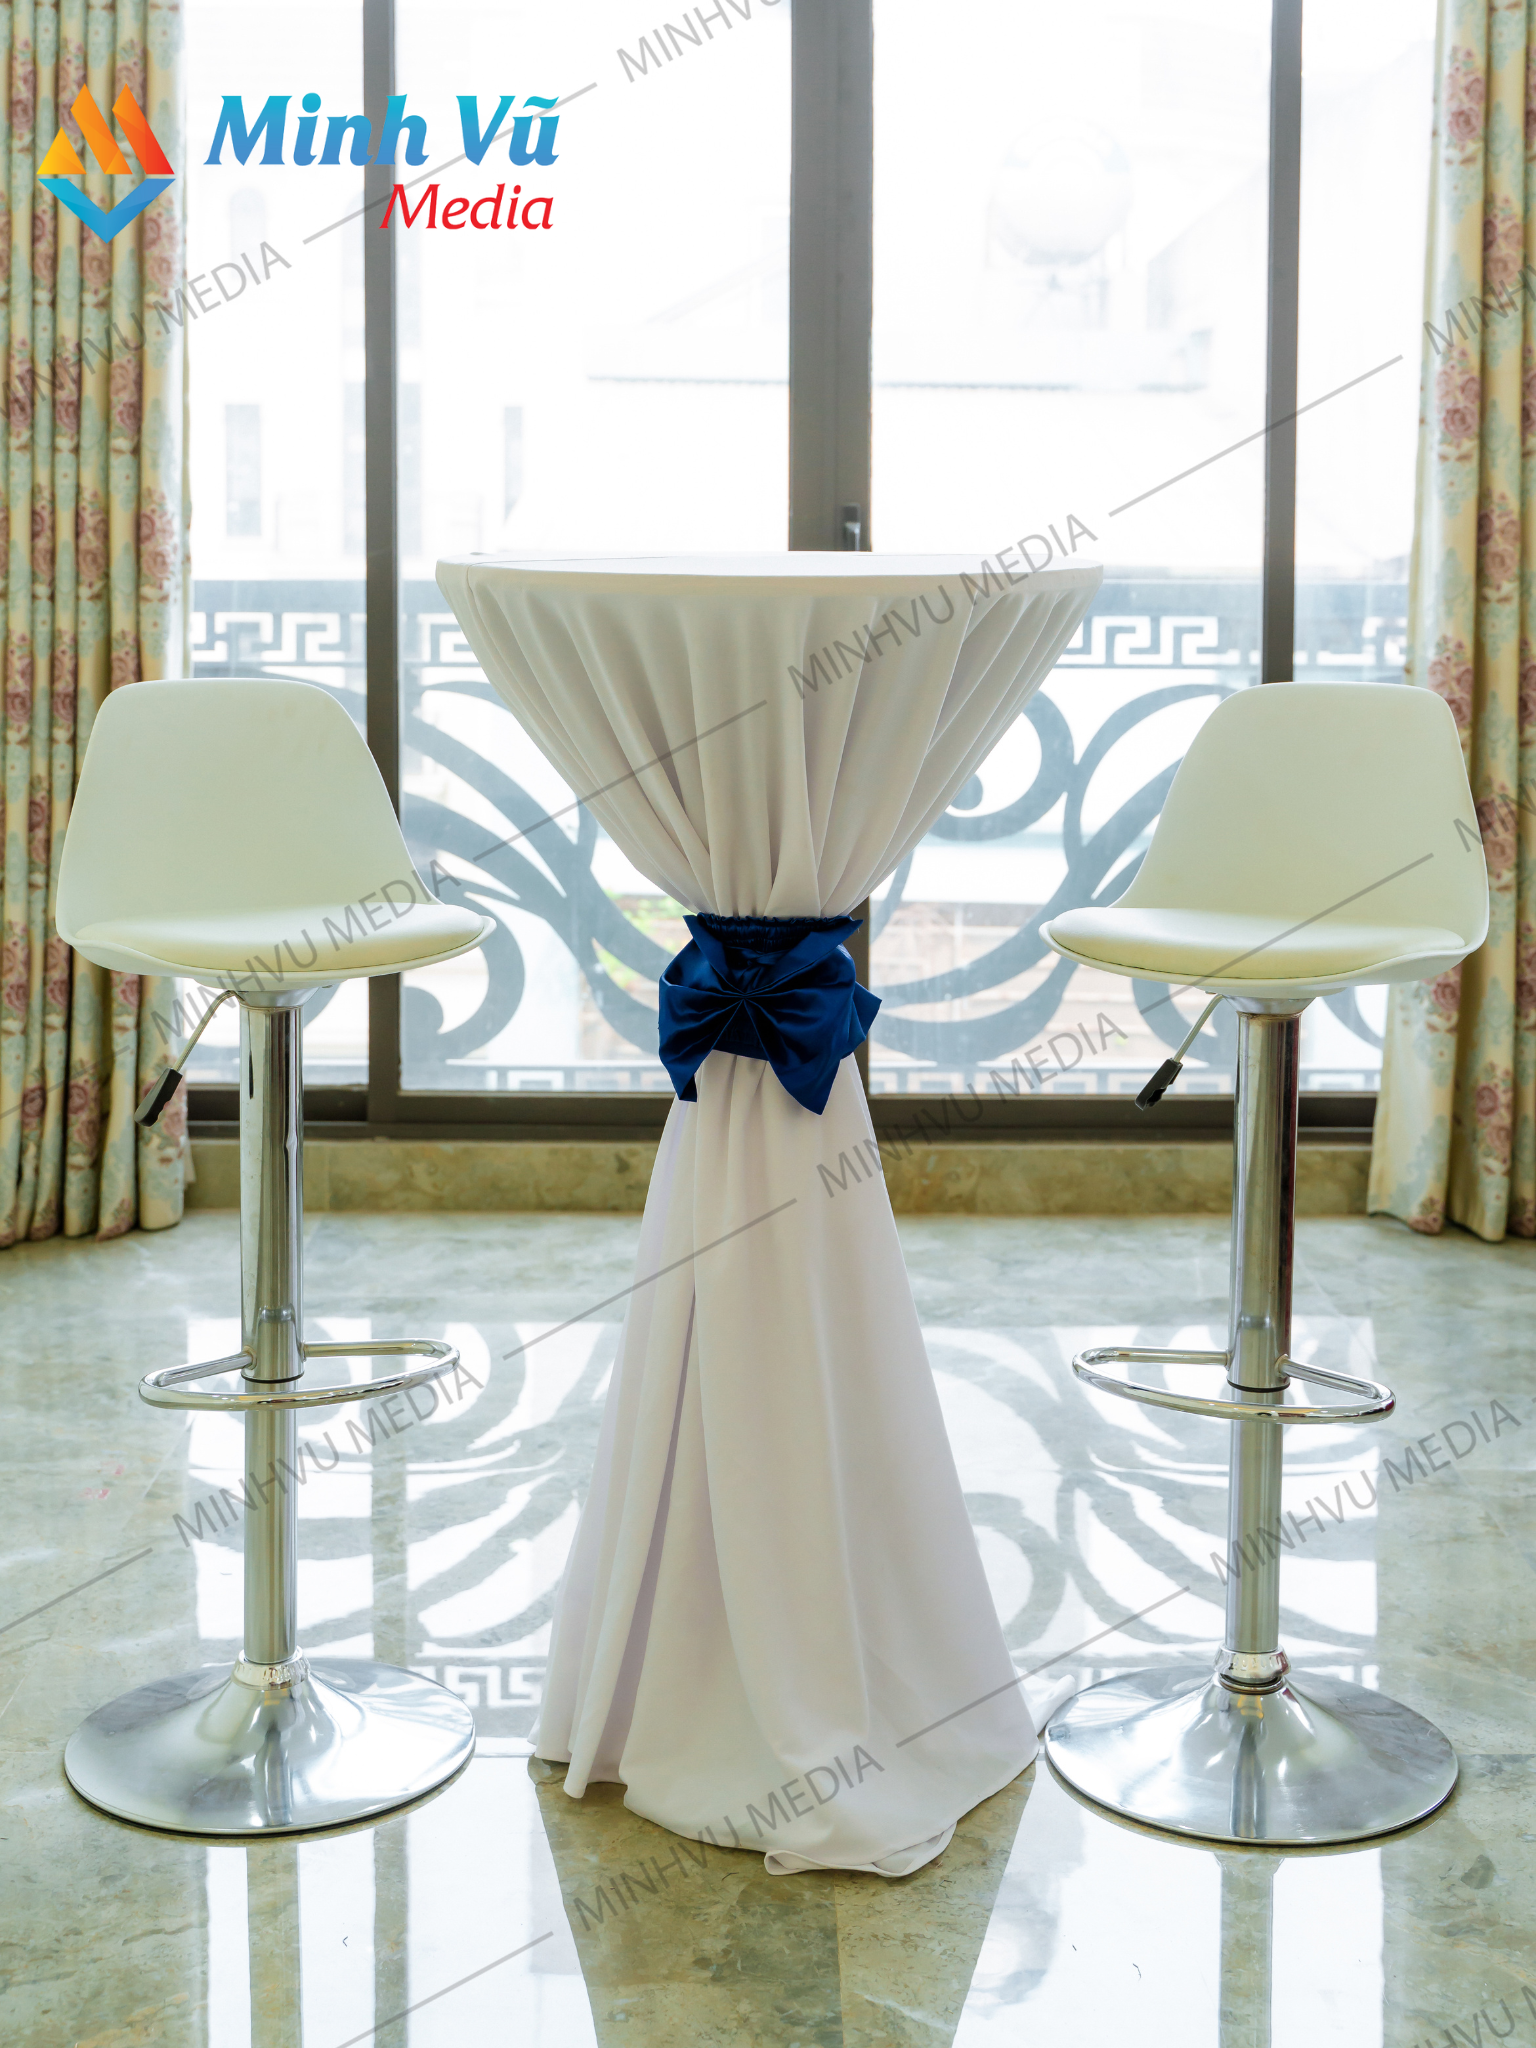 Minh Vũ Media cho thuê bàn bar trắng nơ xanh dương và ghế bar trắng